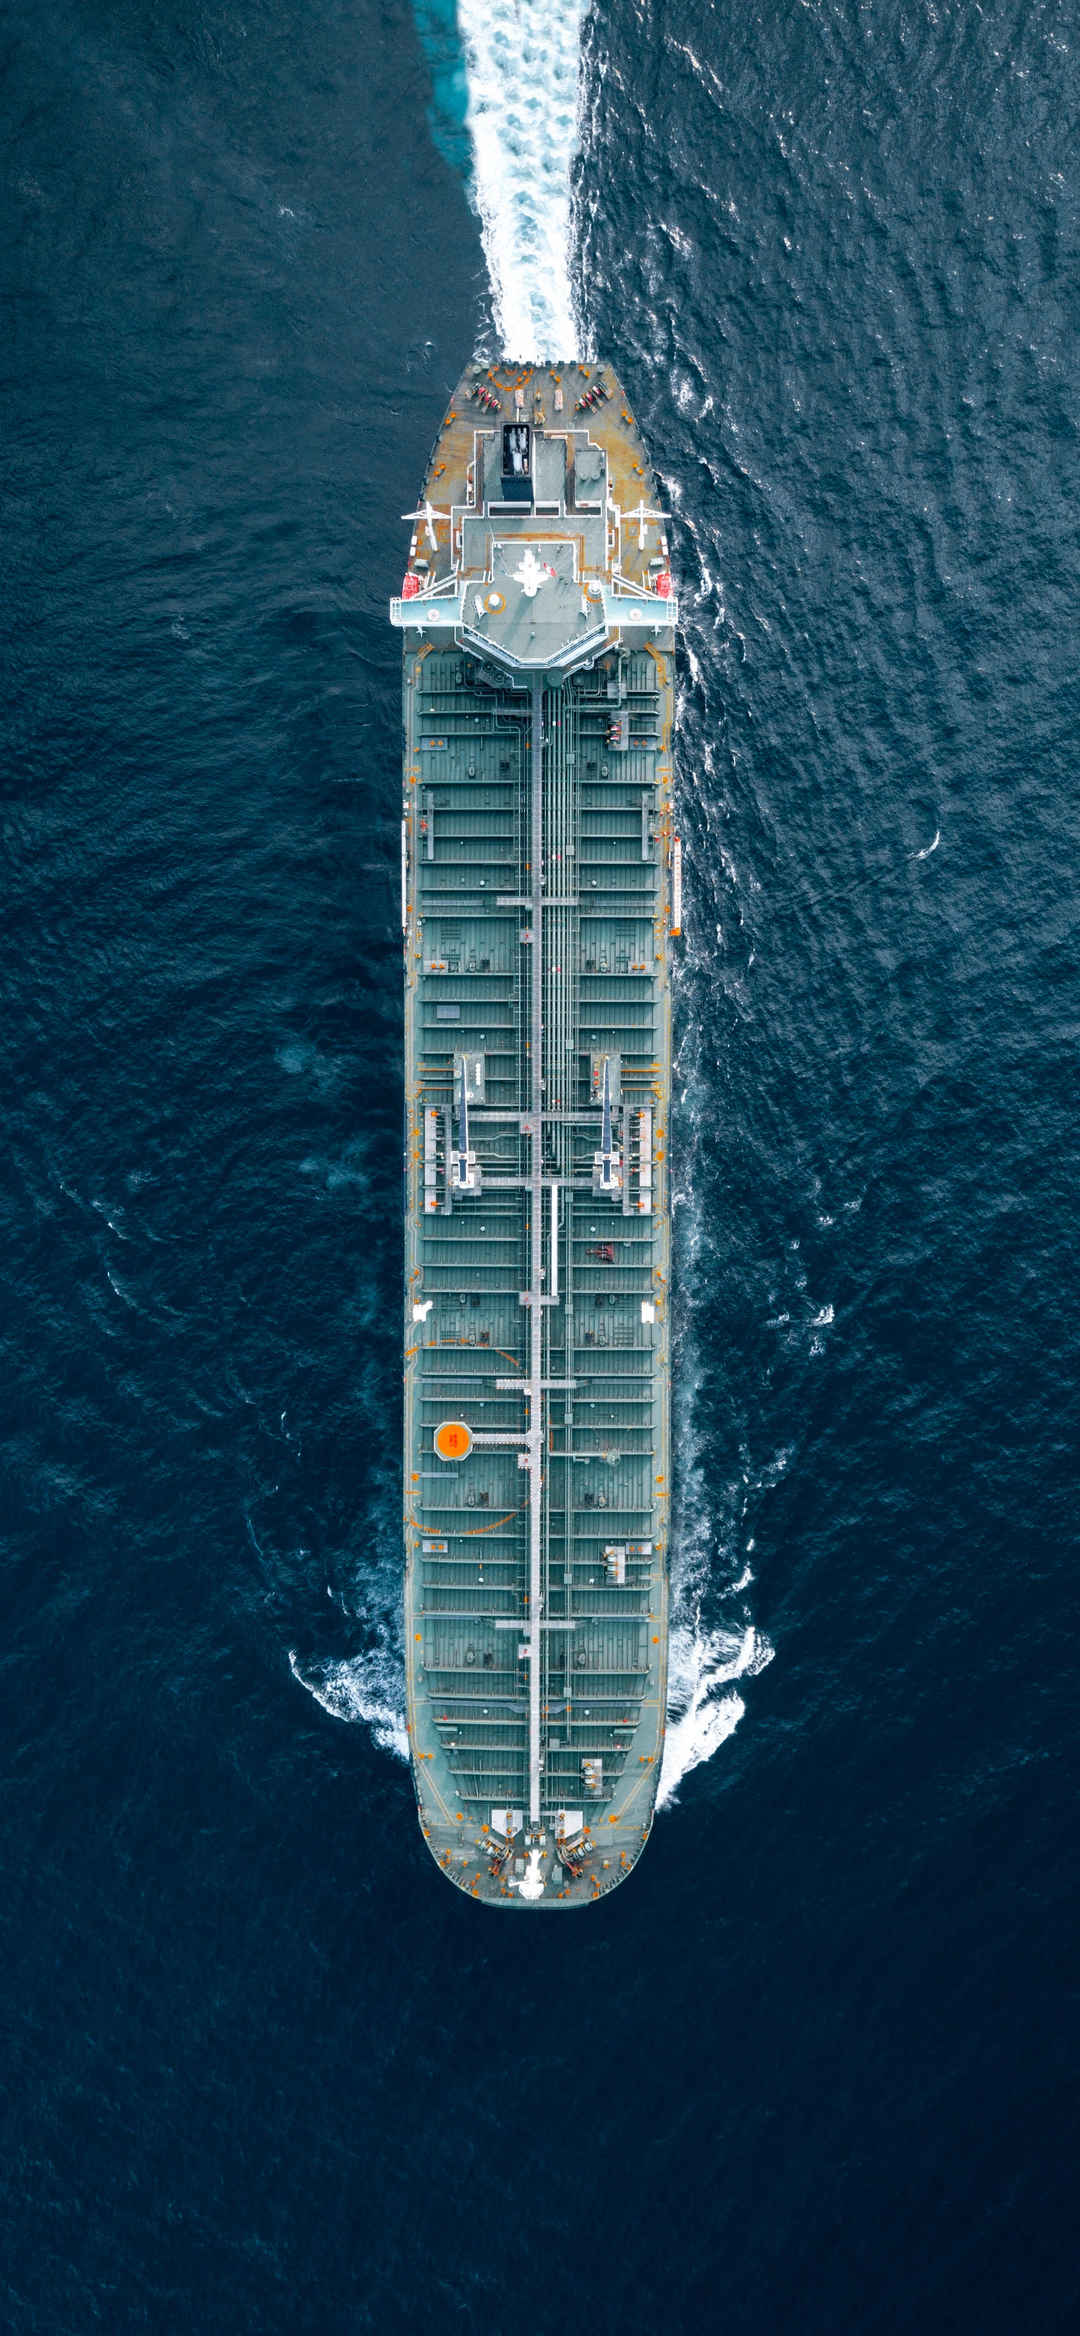 俯瞰海上货船风景壁纸-